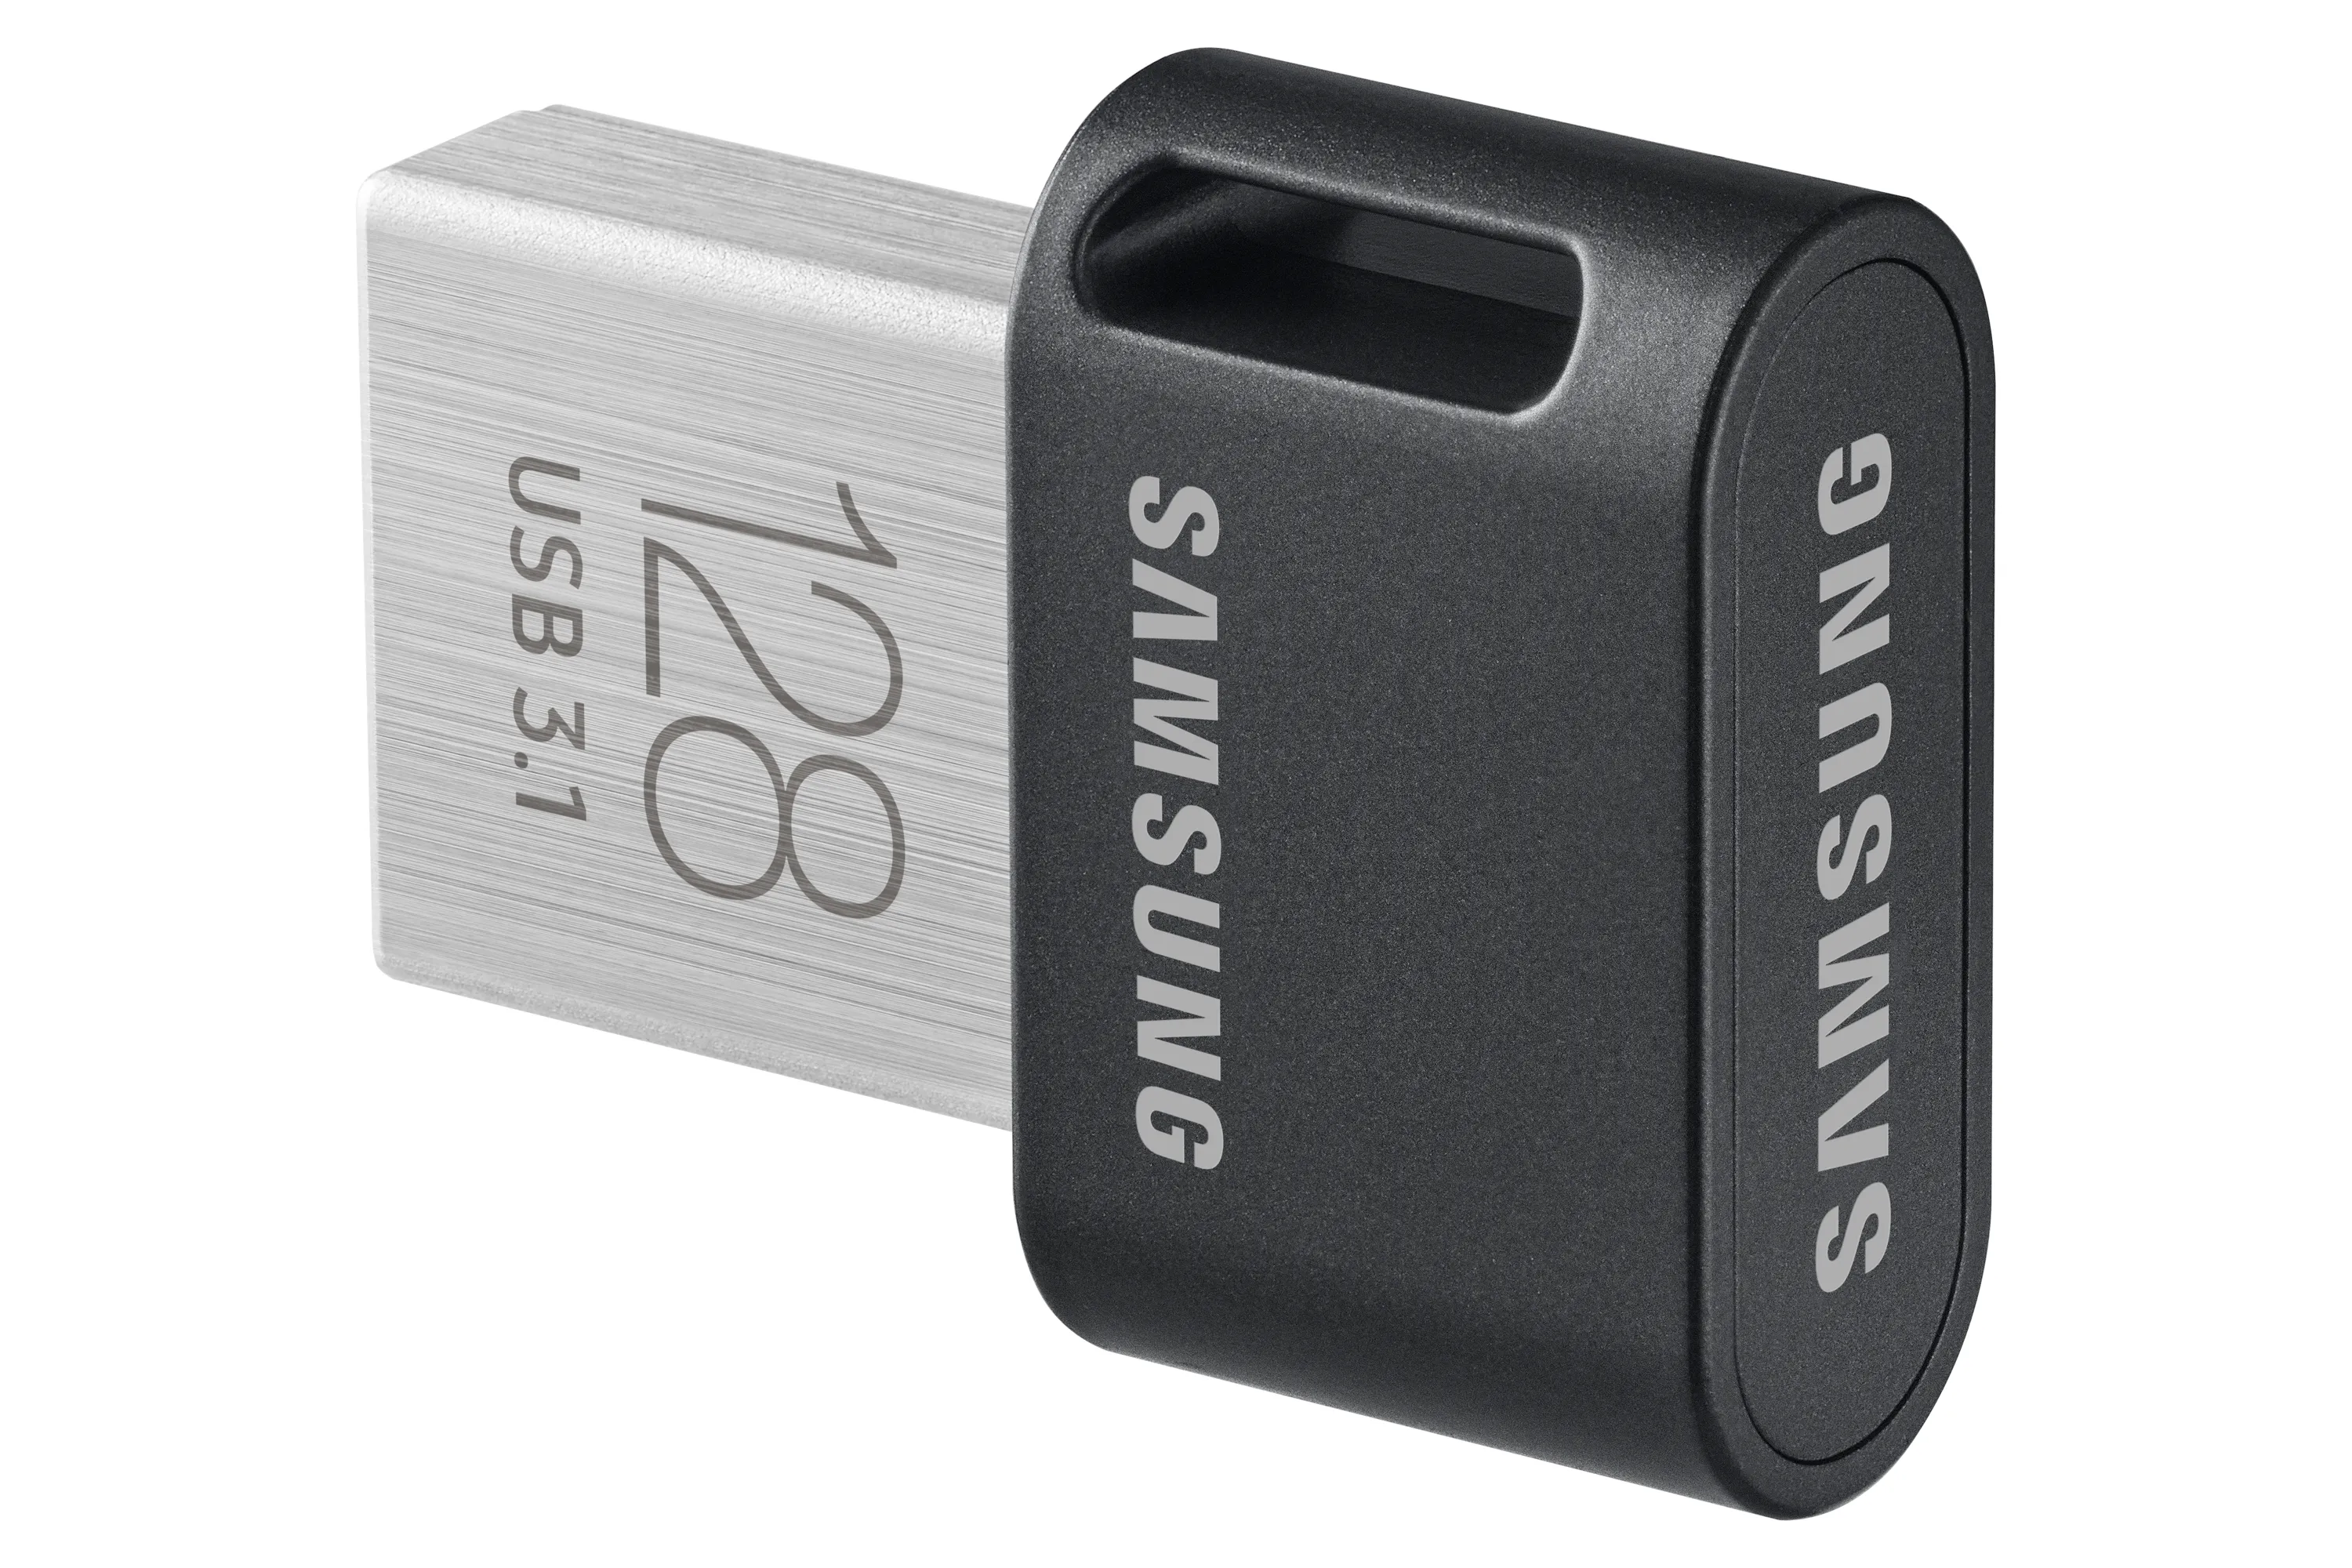 Vente SAMSUNG FIT PLUS 128Go USB 3.1 Samsung au meilleur prix - visuel 10